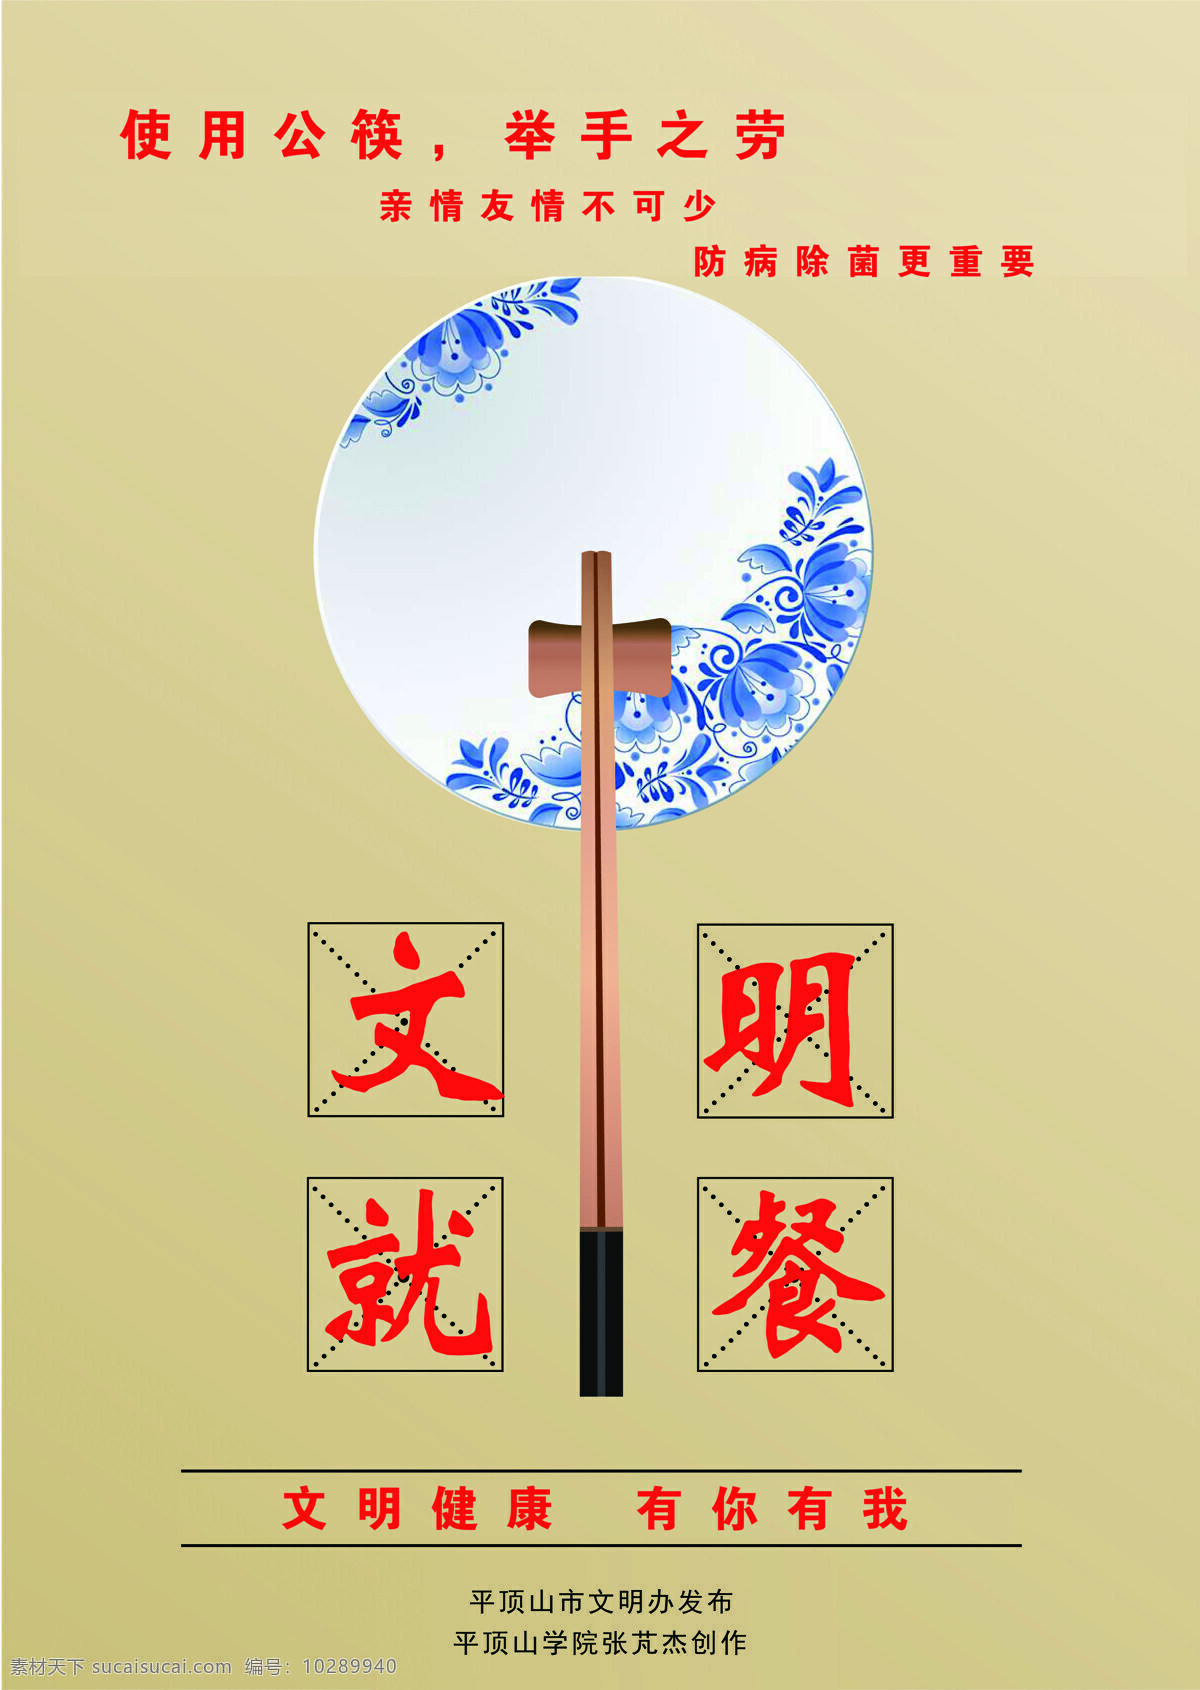 文明就餐 公筷 食堂文化 文明 健康 防病 除菌